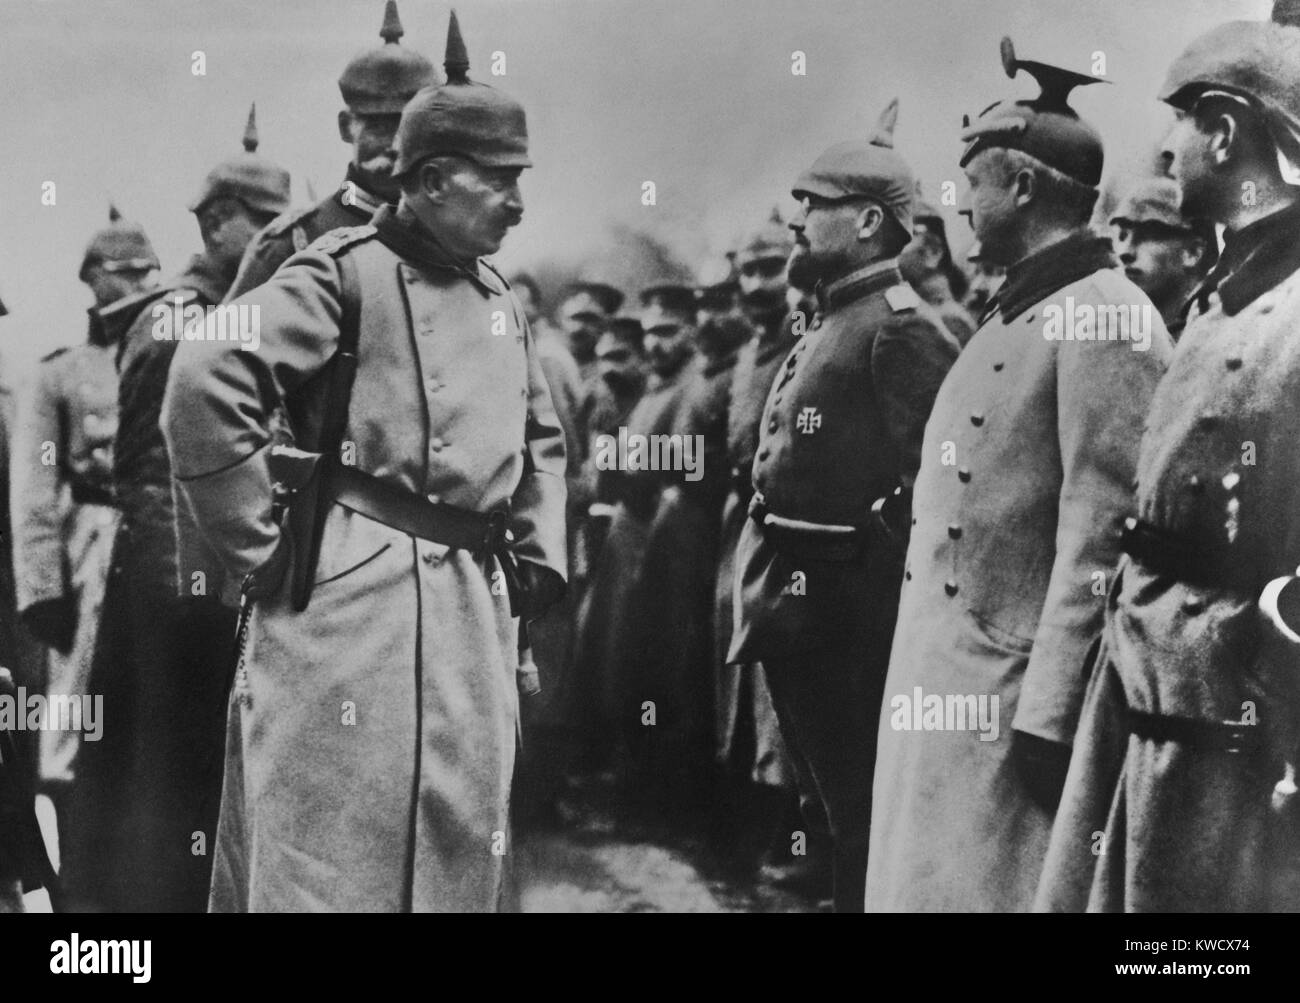 Il Kaiser Guglielmo II di ispezionare i soldati tedeschi in campo durante la guerra mondiale 1. Wilhelms WW 1 Ruolo di comando era soprattutto quello di una polena, con la maggior parte del potere nelle mani di Hindenburg e Ludendorff (BSLOC 2017 2 47) Foto Stock